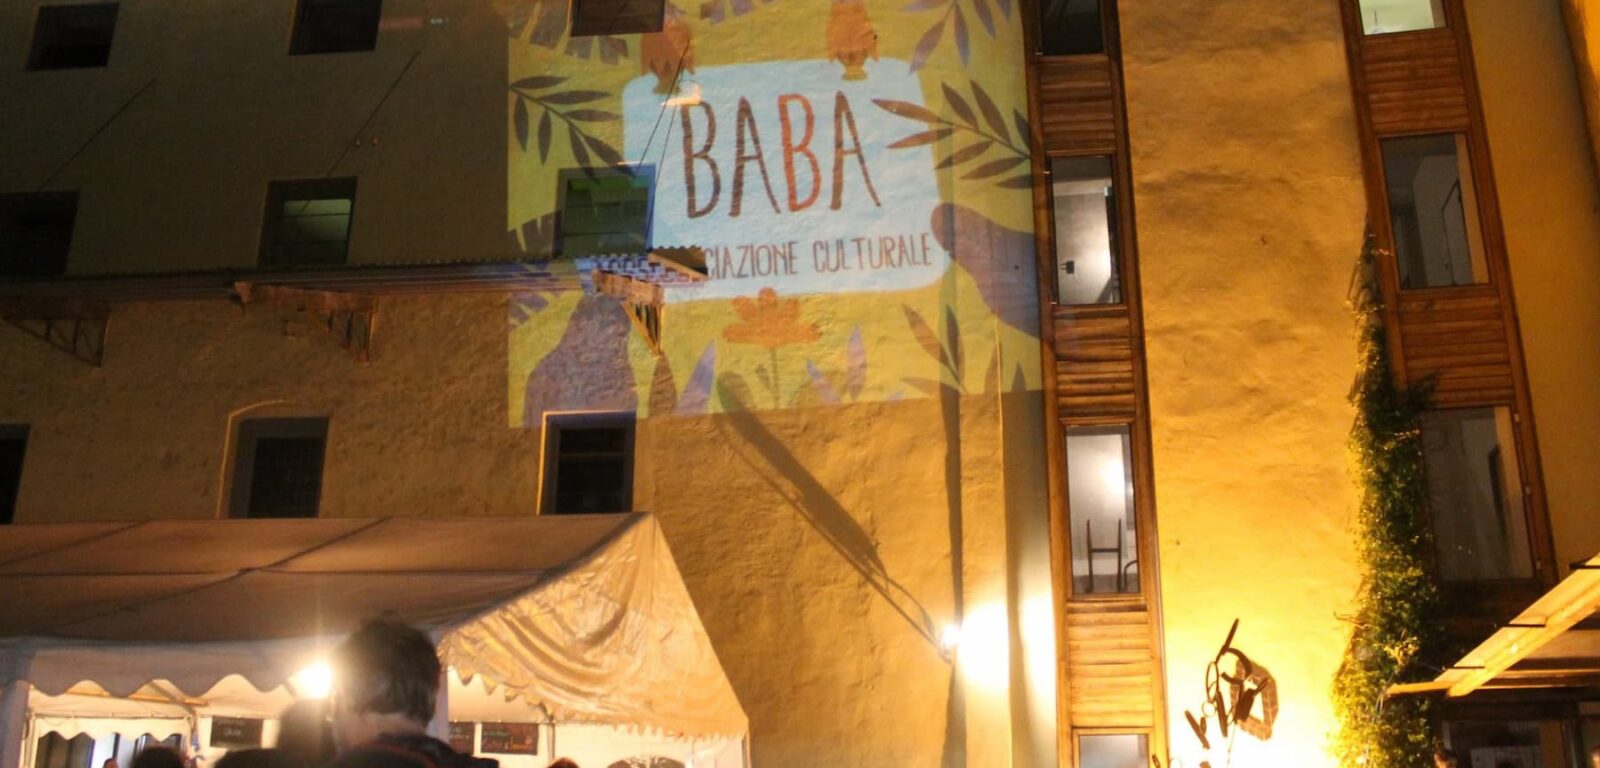 babaruM sede dell'associazione BaBa di Volano (Rovereto)